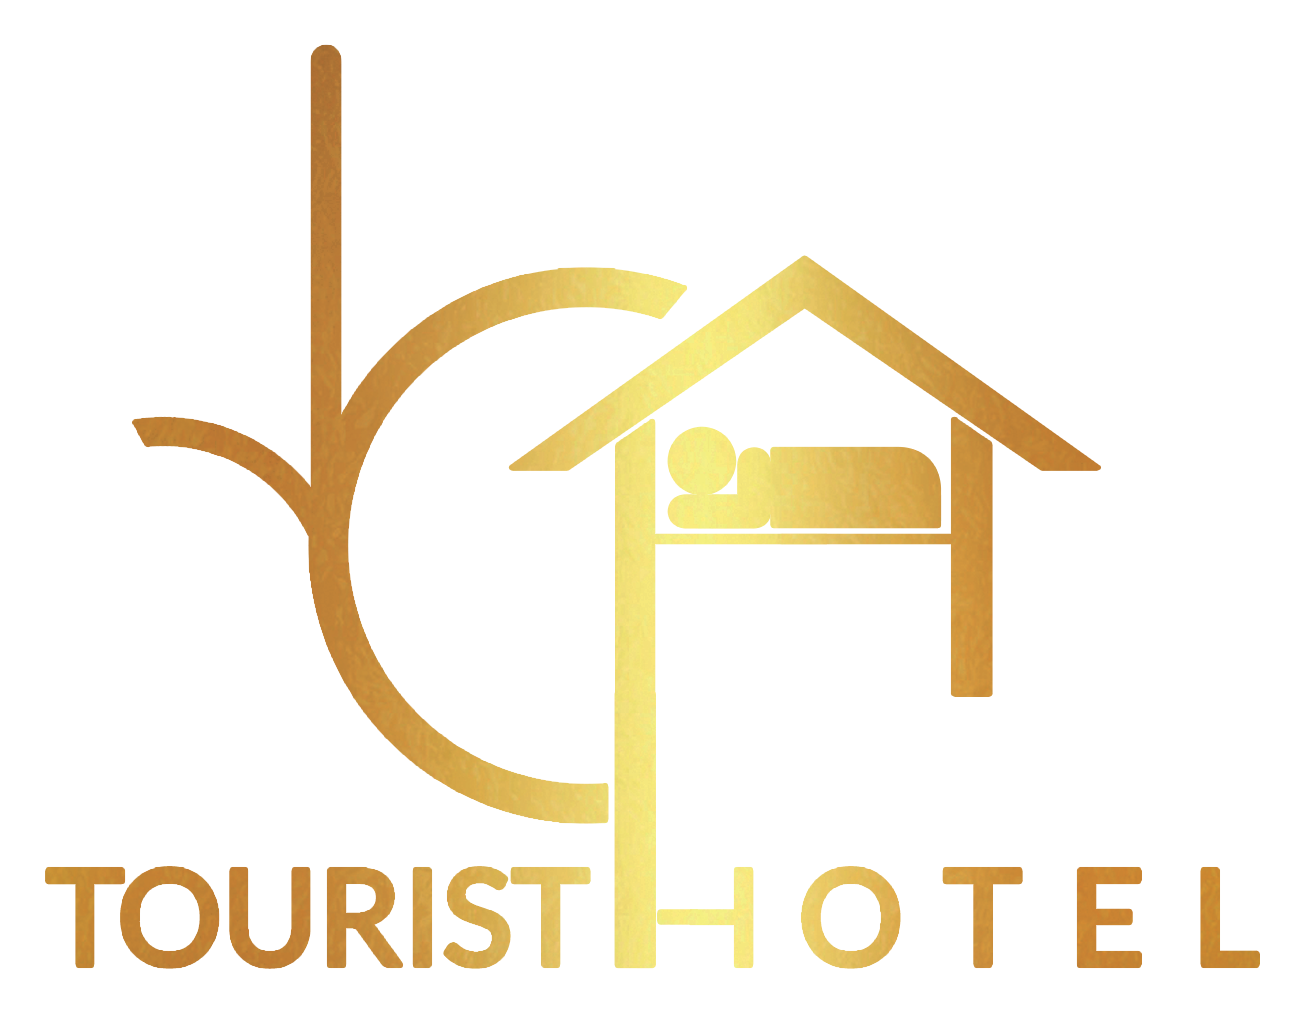 اسعار فنادق وسط البلد - فنادق رخيصة في القاهرة - افضل فندق بوسط البلد